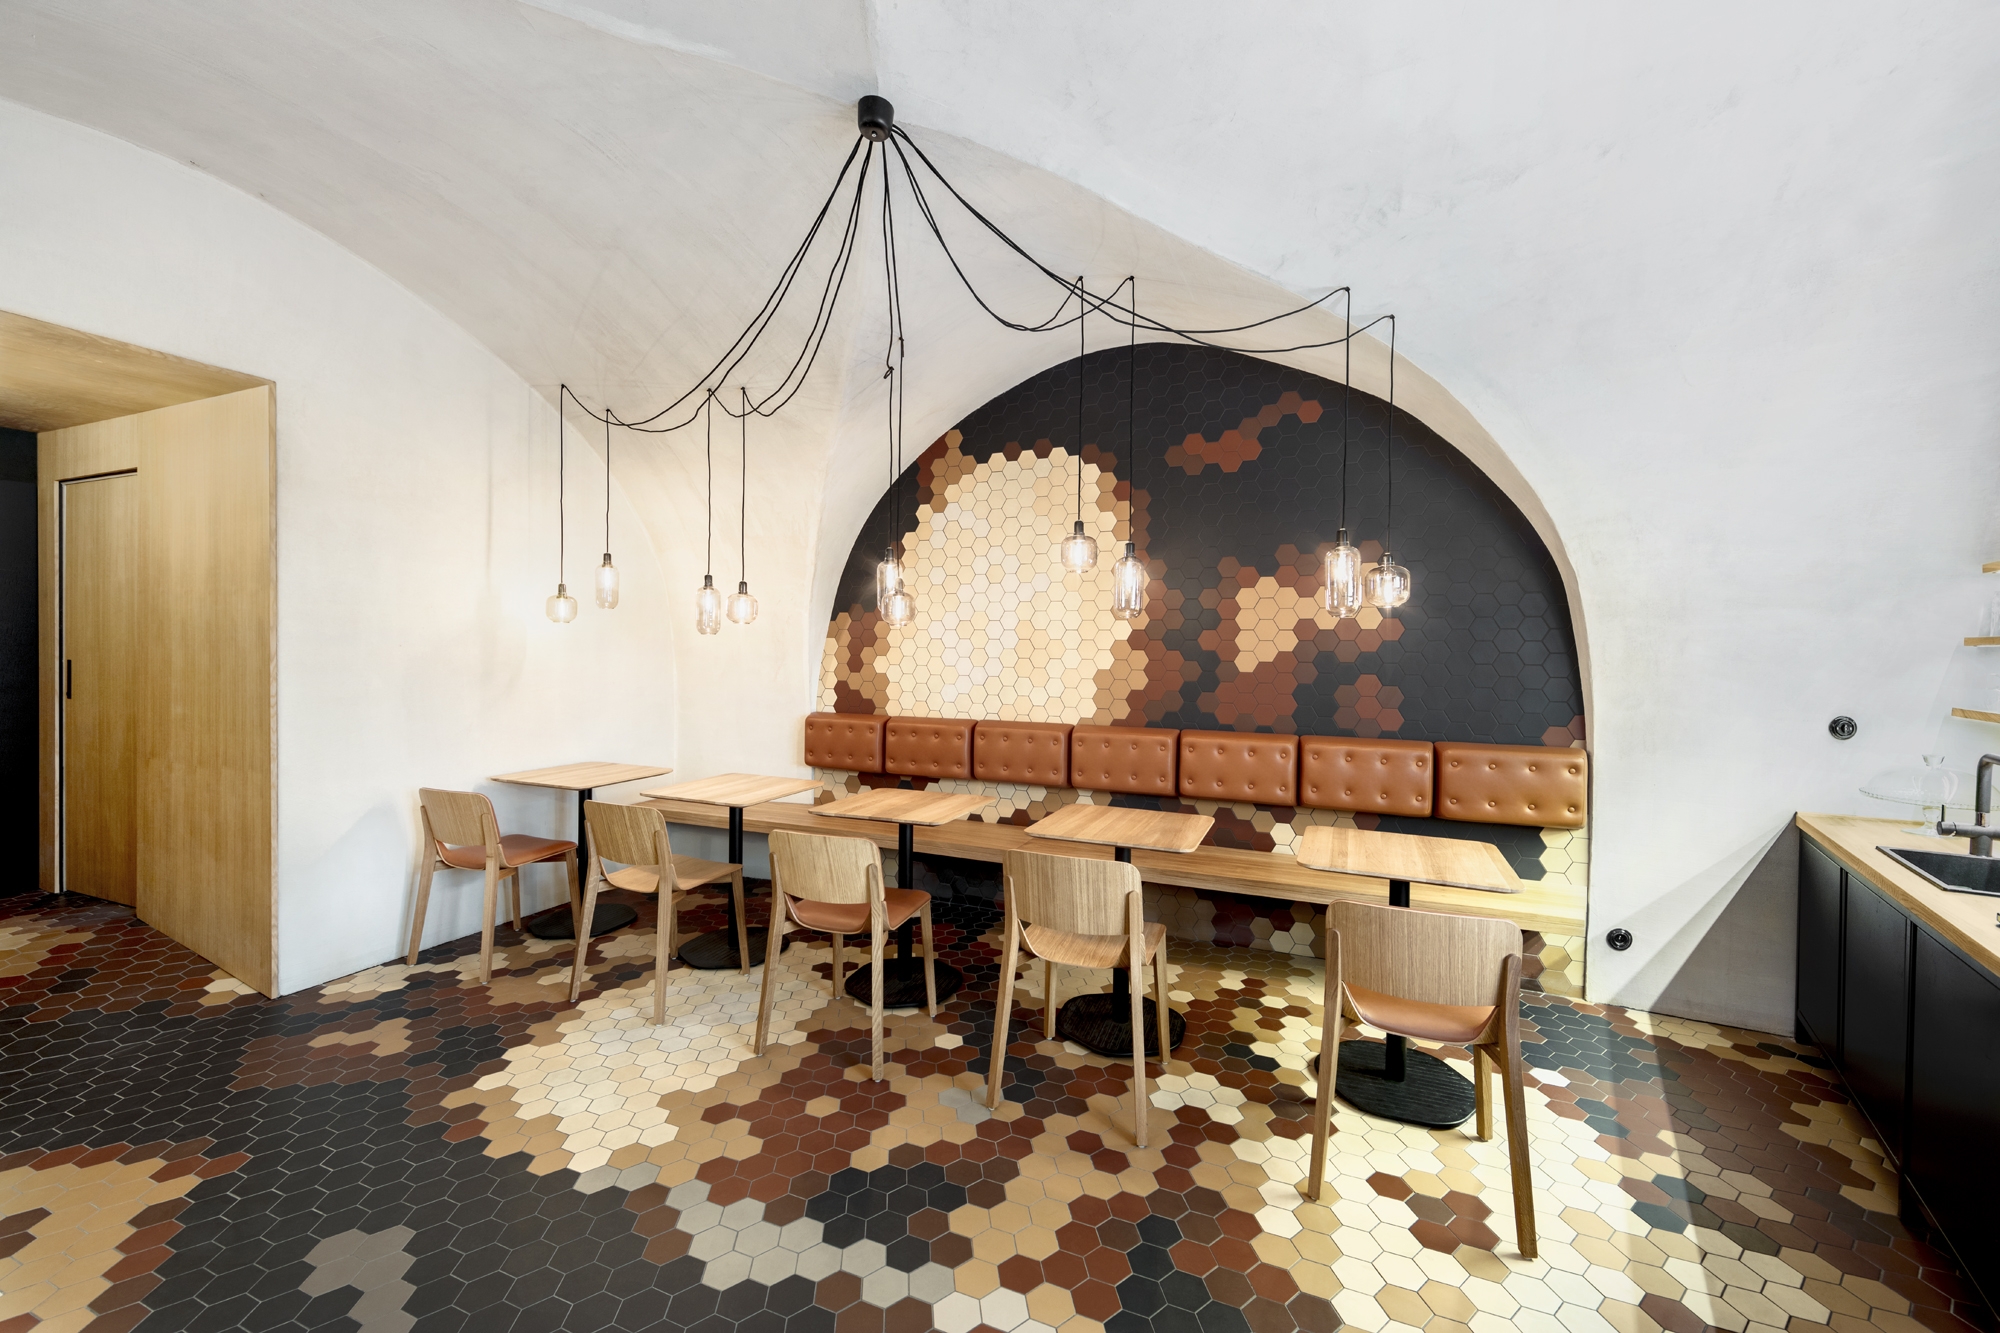 图片[3]|Schody家庭酒吧|ART-Arrakis | 建筑室内设计的创新与灵感